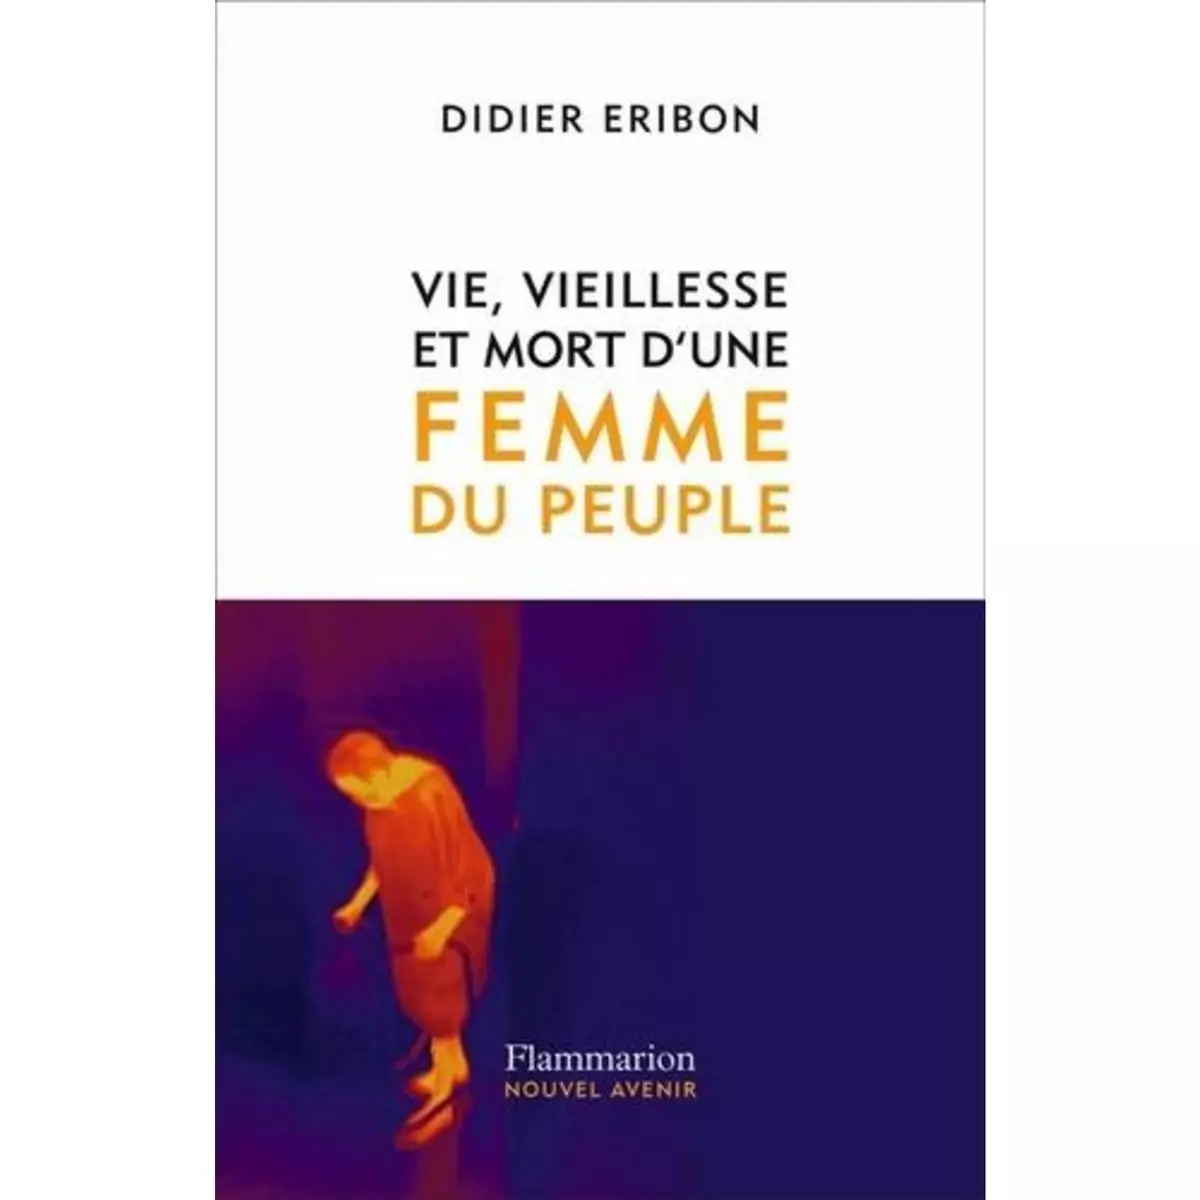  VIE, VIEILLESSE ET MORT D'UNE FEMME DU PEUPLE, Eribon Didier